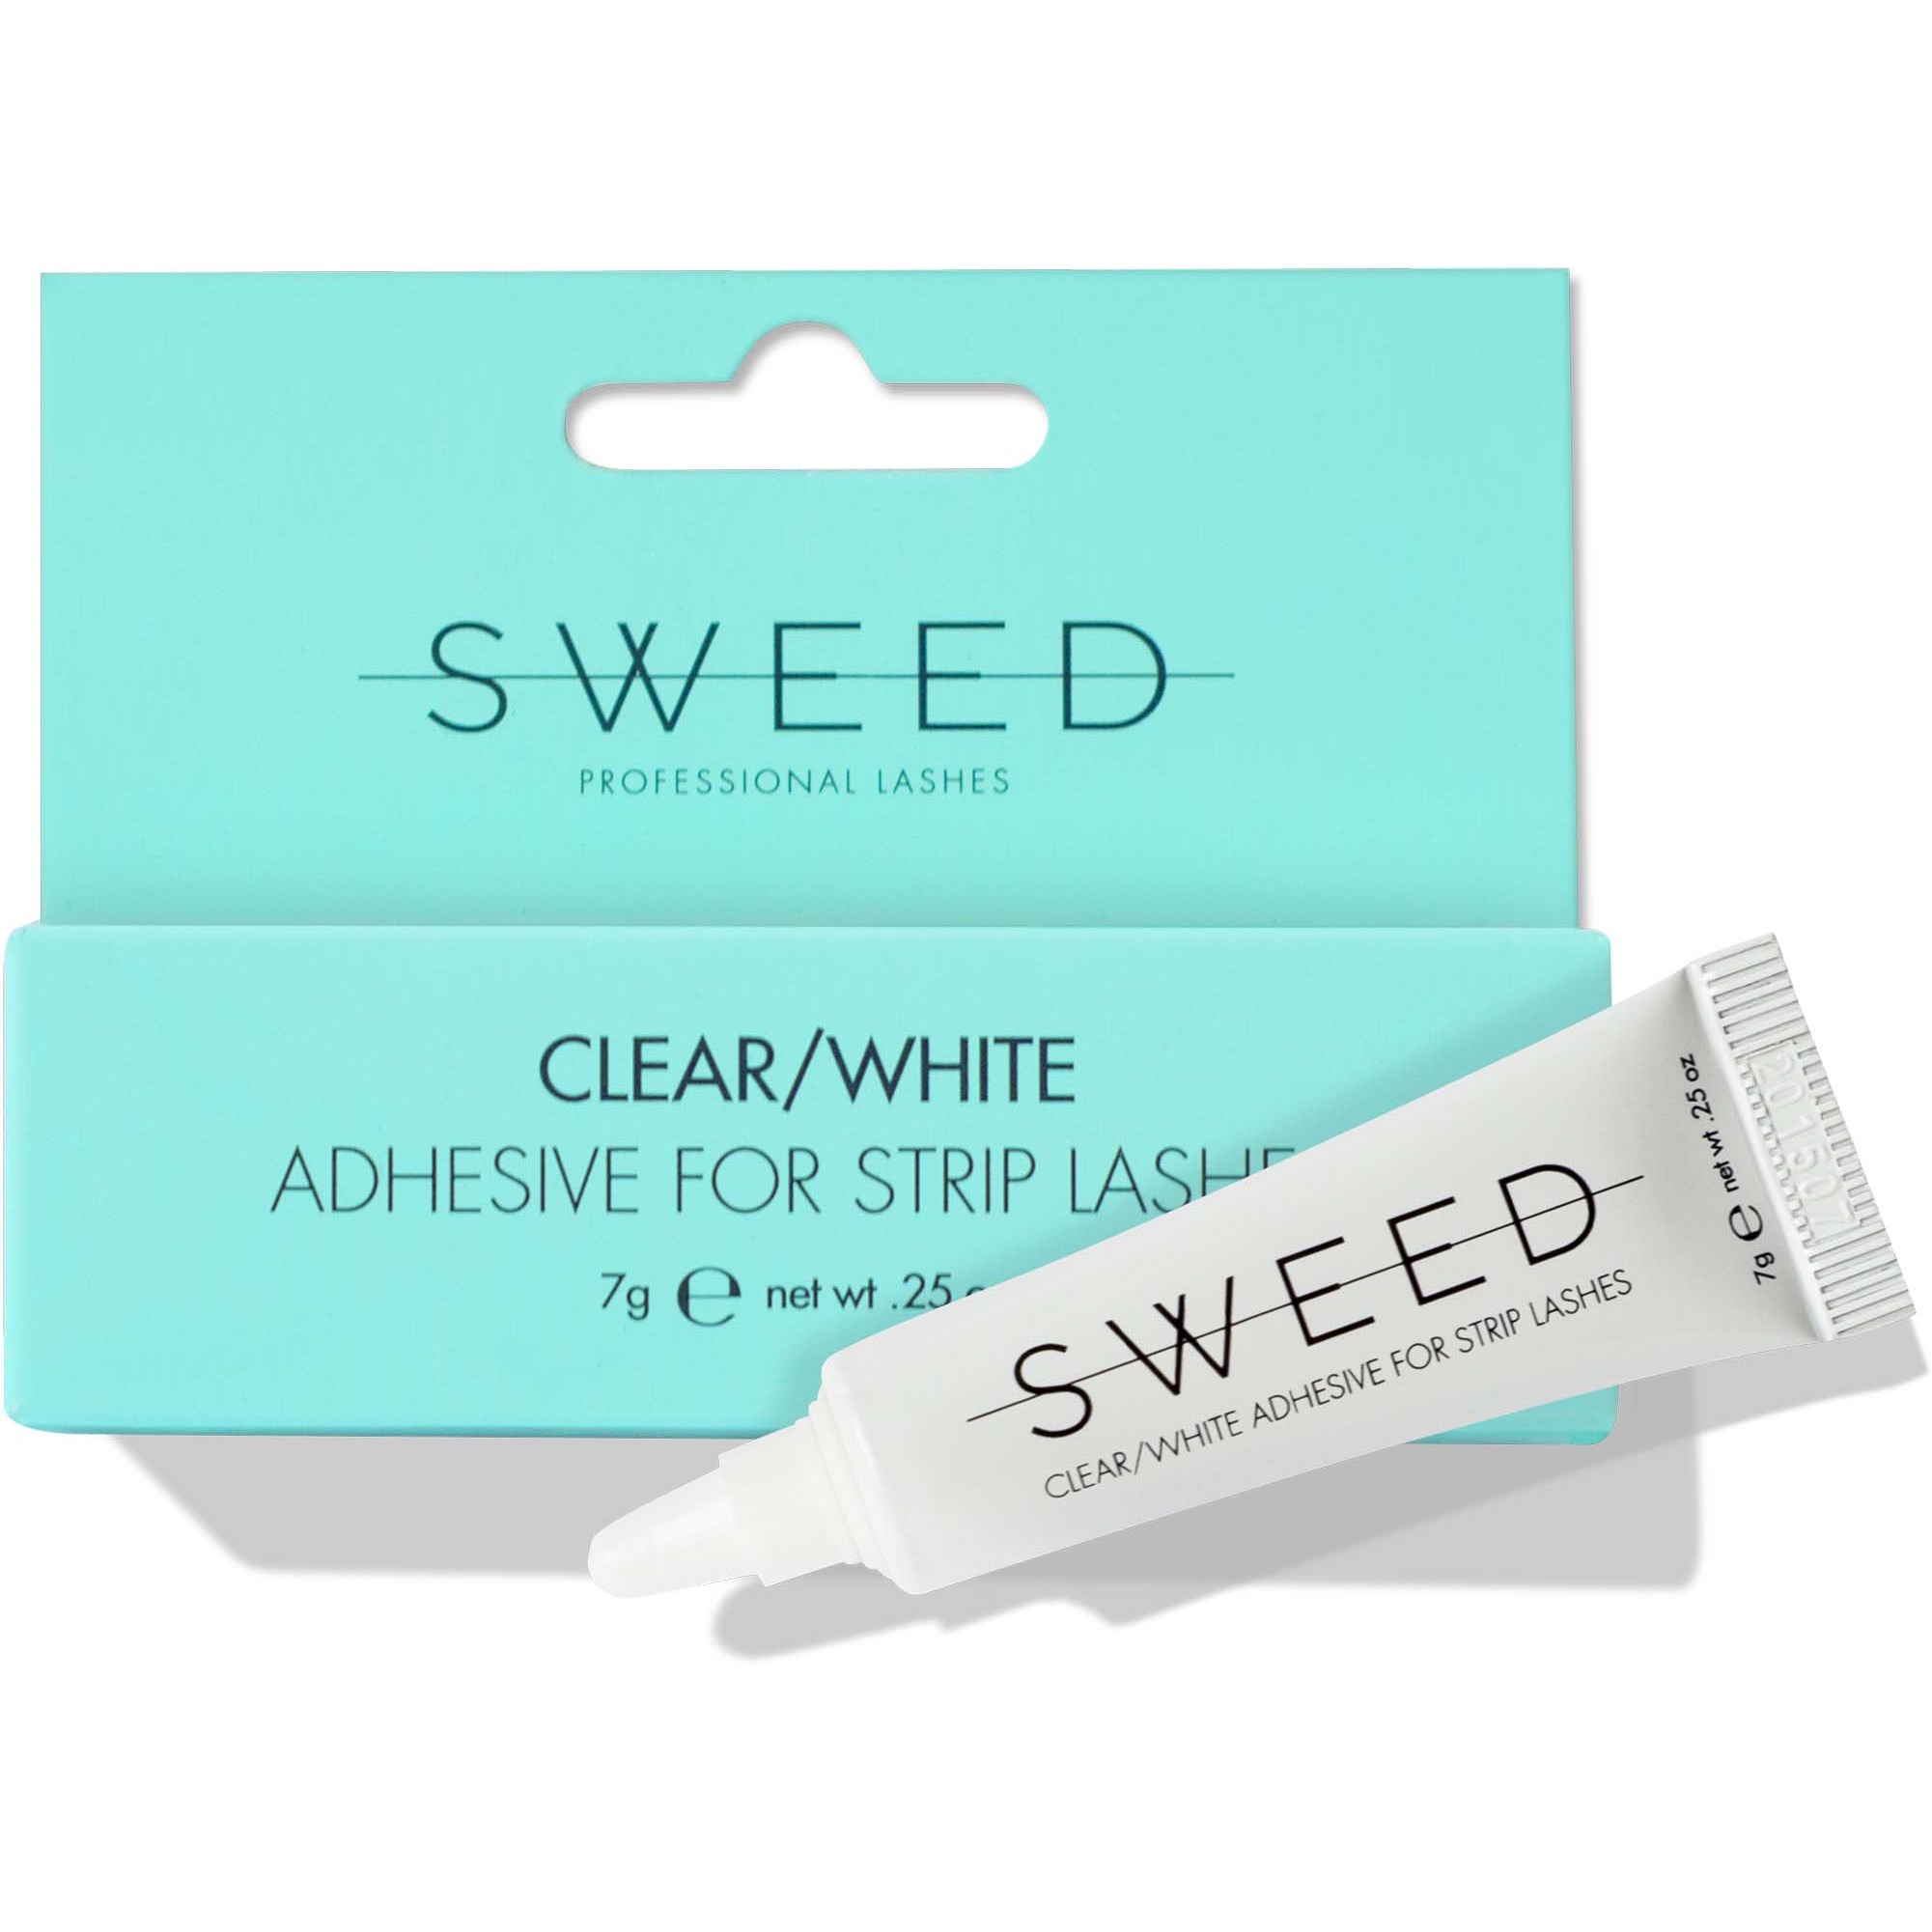 Bilde av Sweed Adhesive For Strip Lashes Clear/white